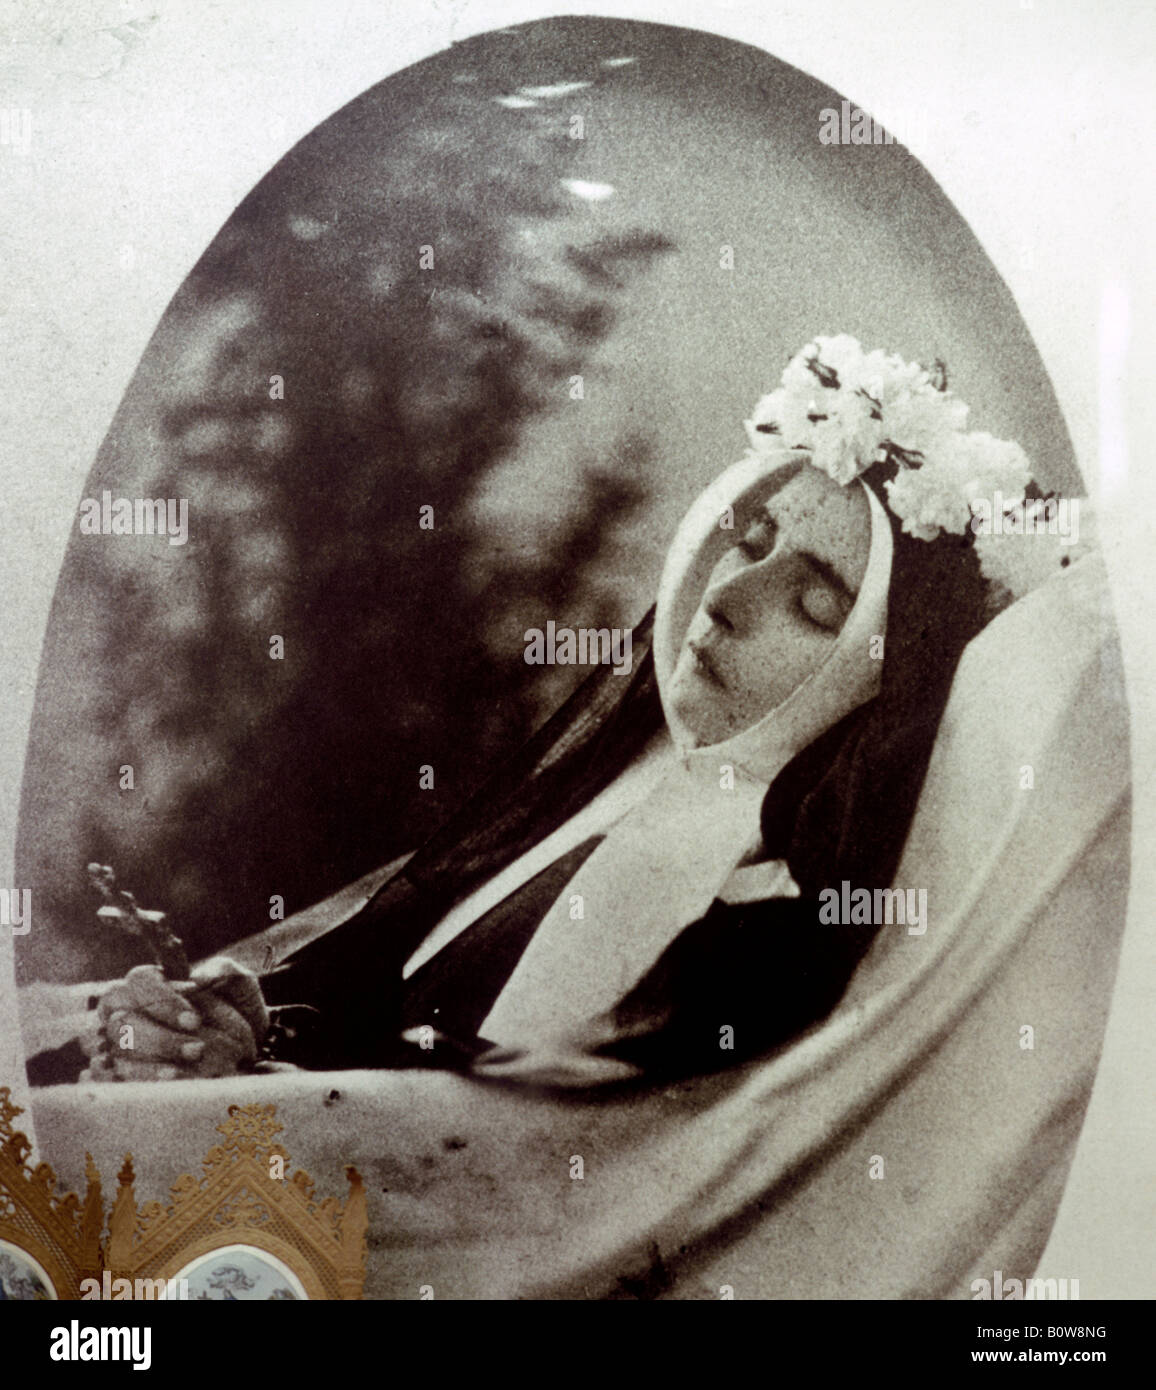 Foto von St. Bernadette von Lourdes auf dem Sterbebett 1879 Monastery Museum St. Gildard, Nevers, Departement Nièvre, Frankreich, Eu Stockfoto